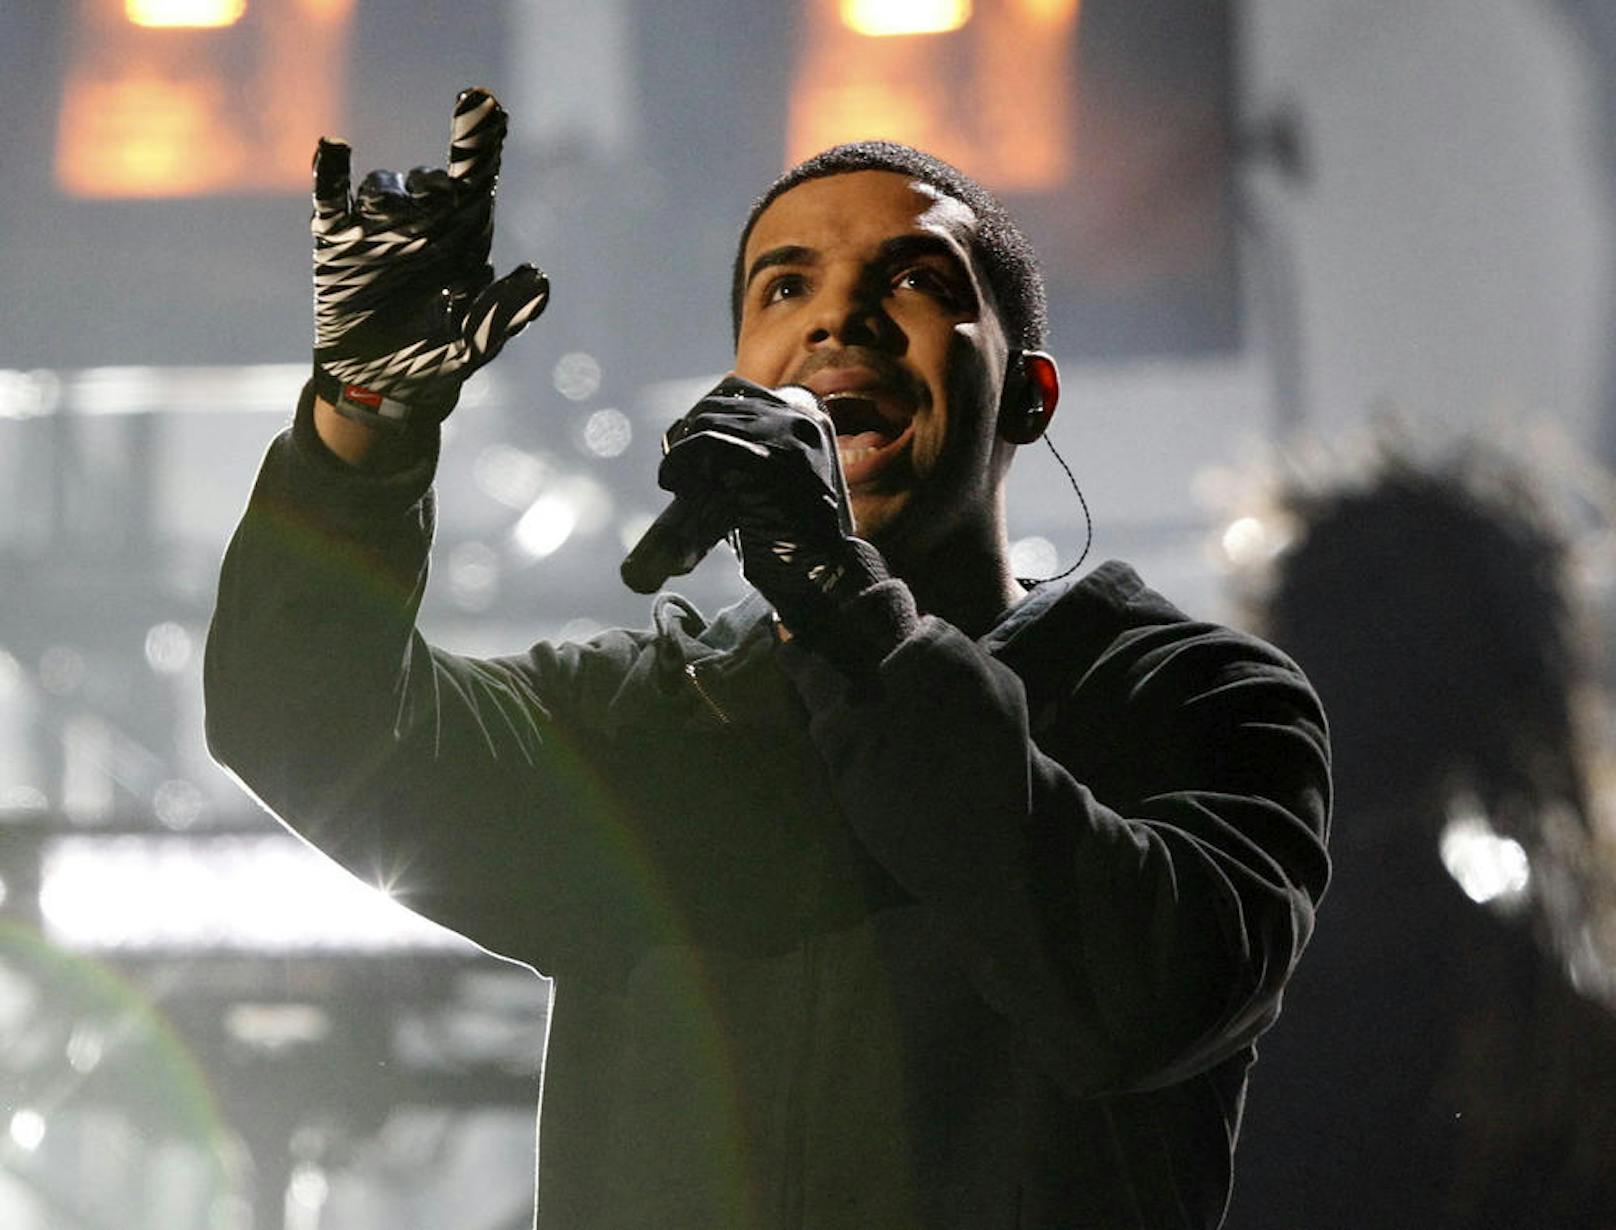 <b>431</b>
In den Hot 100 Charts hielt sich Drake mit seinen Songs stolze 431 aufeinander folgende Wochen. Er überholte Lil Wayne mit 326 und Rihanna mit 216 Wochen.